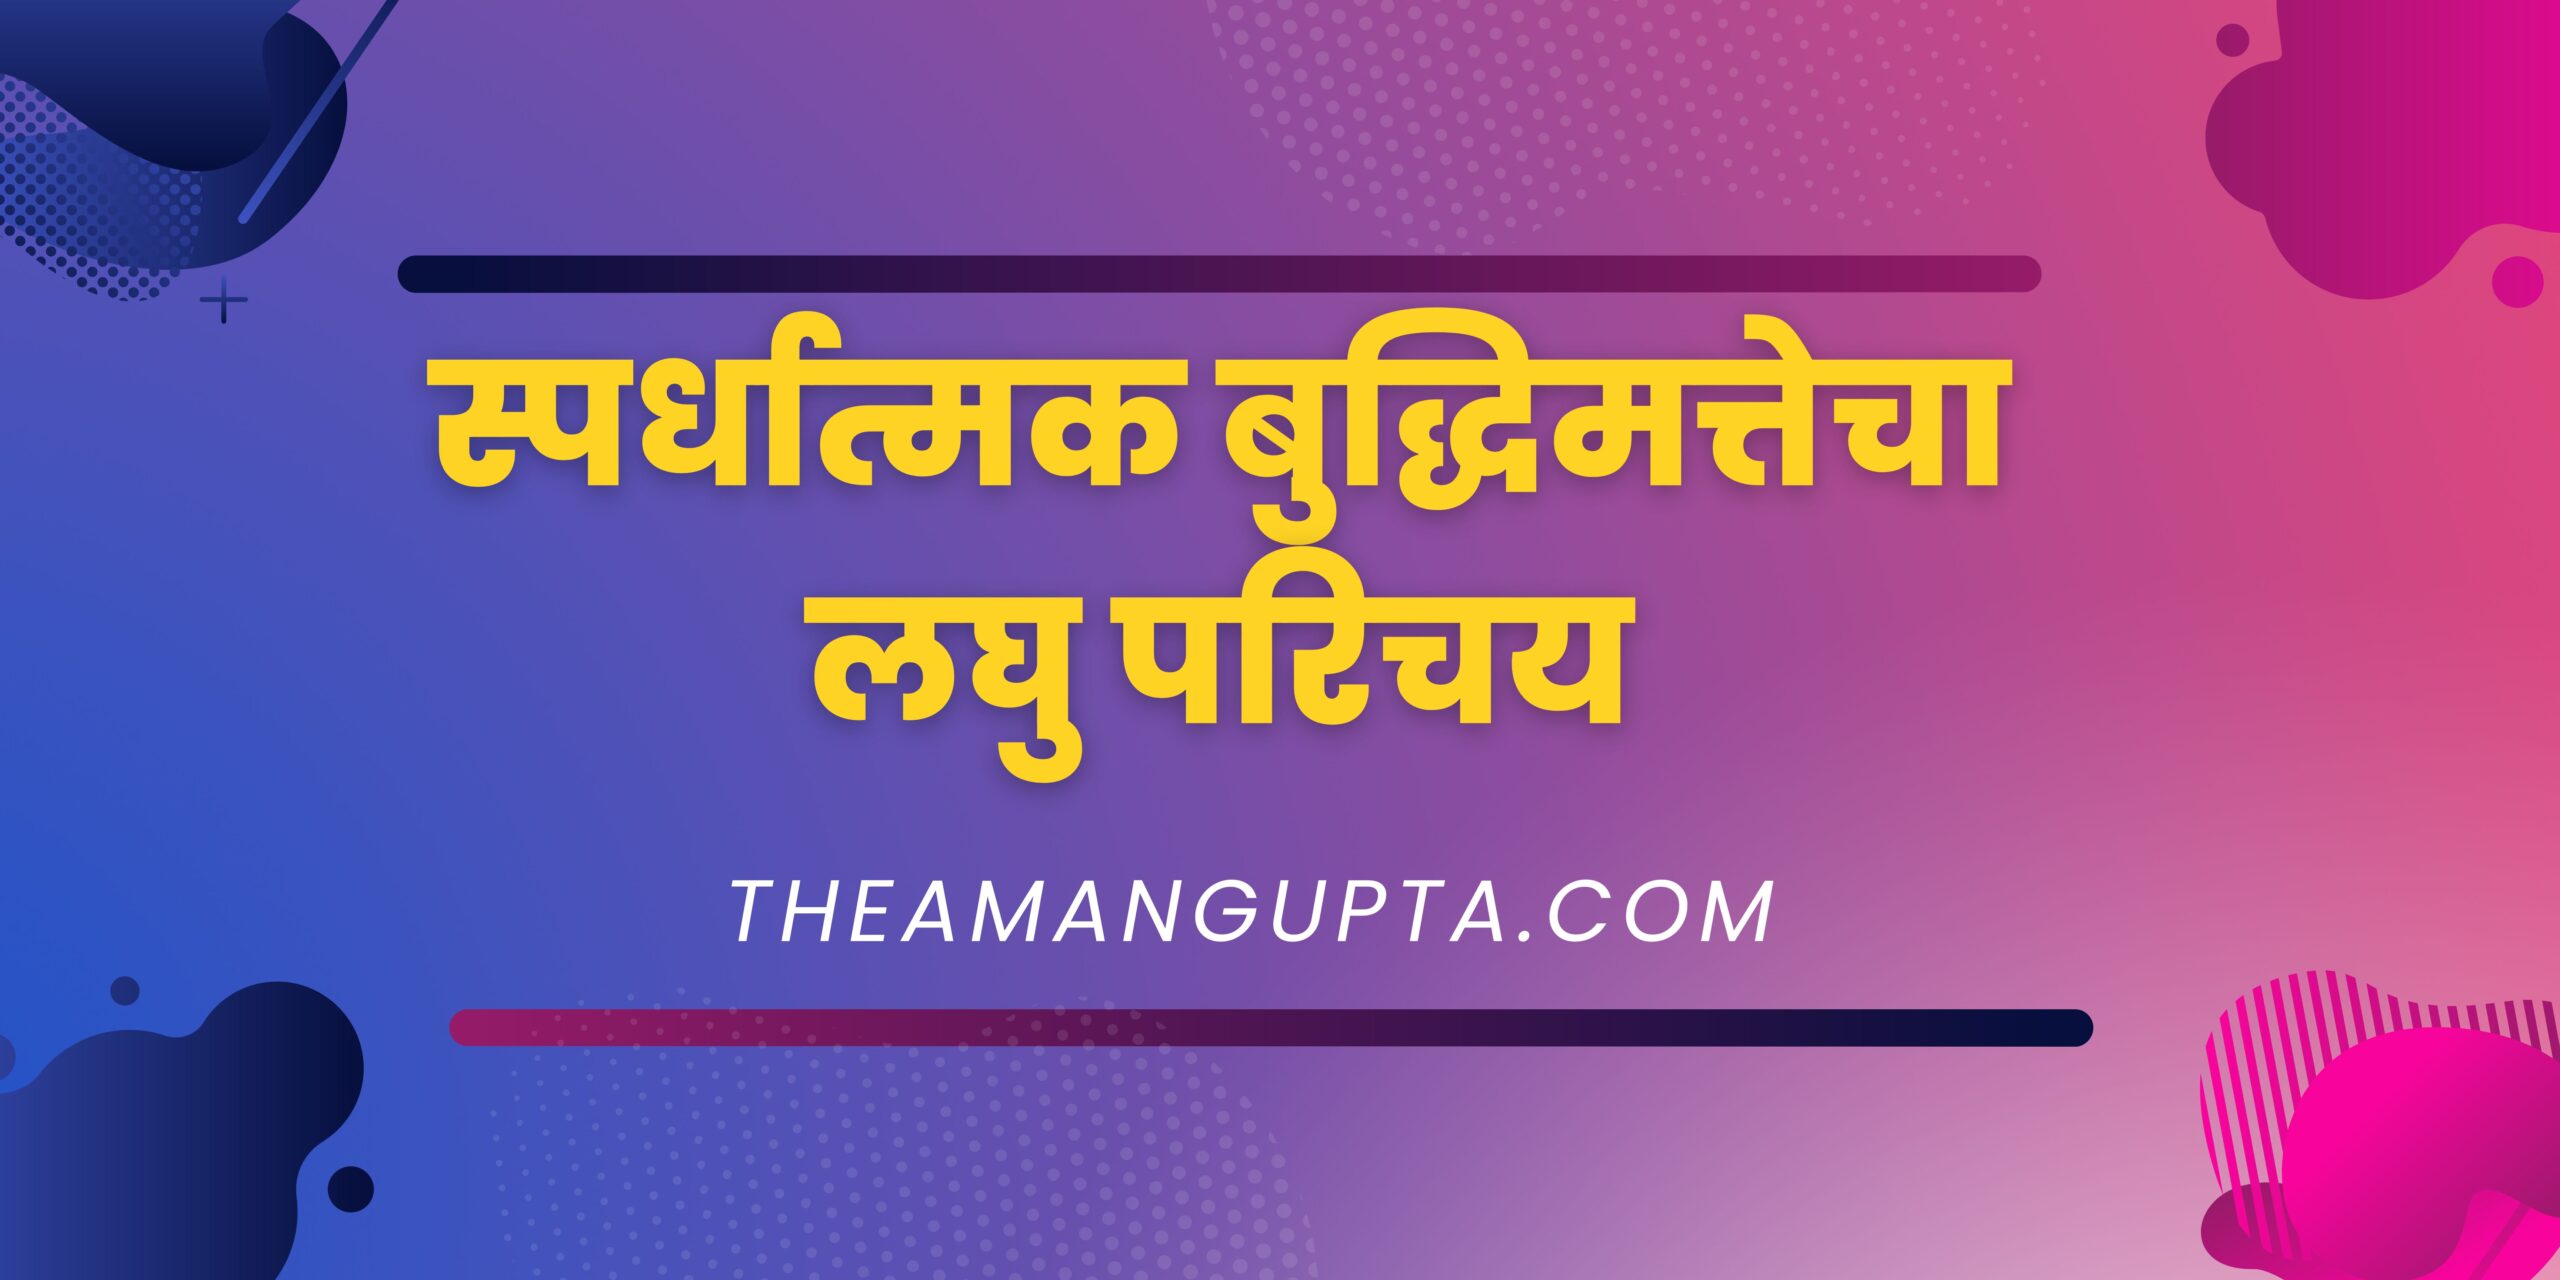 स्पर्धात्मक बुद्धिमत्तेचा लघु परिचय|स्पर्धात्मक बुद्धिमत्तेचा लघु परिचय|Theamangupta|Theamangupta